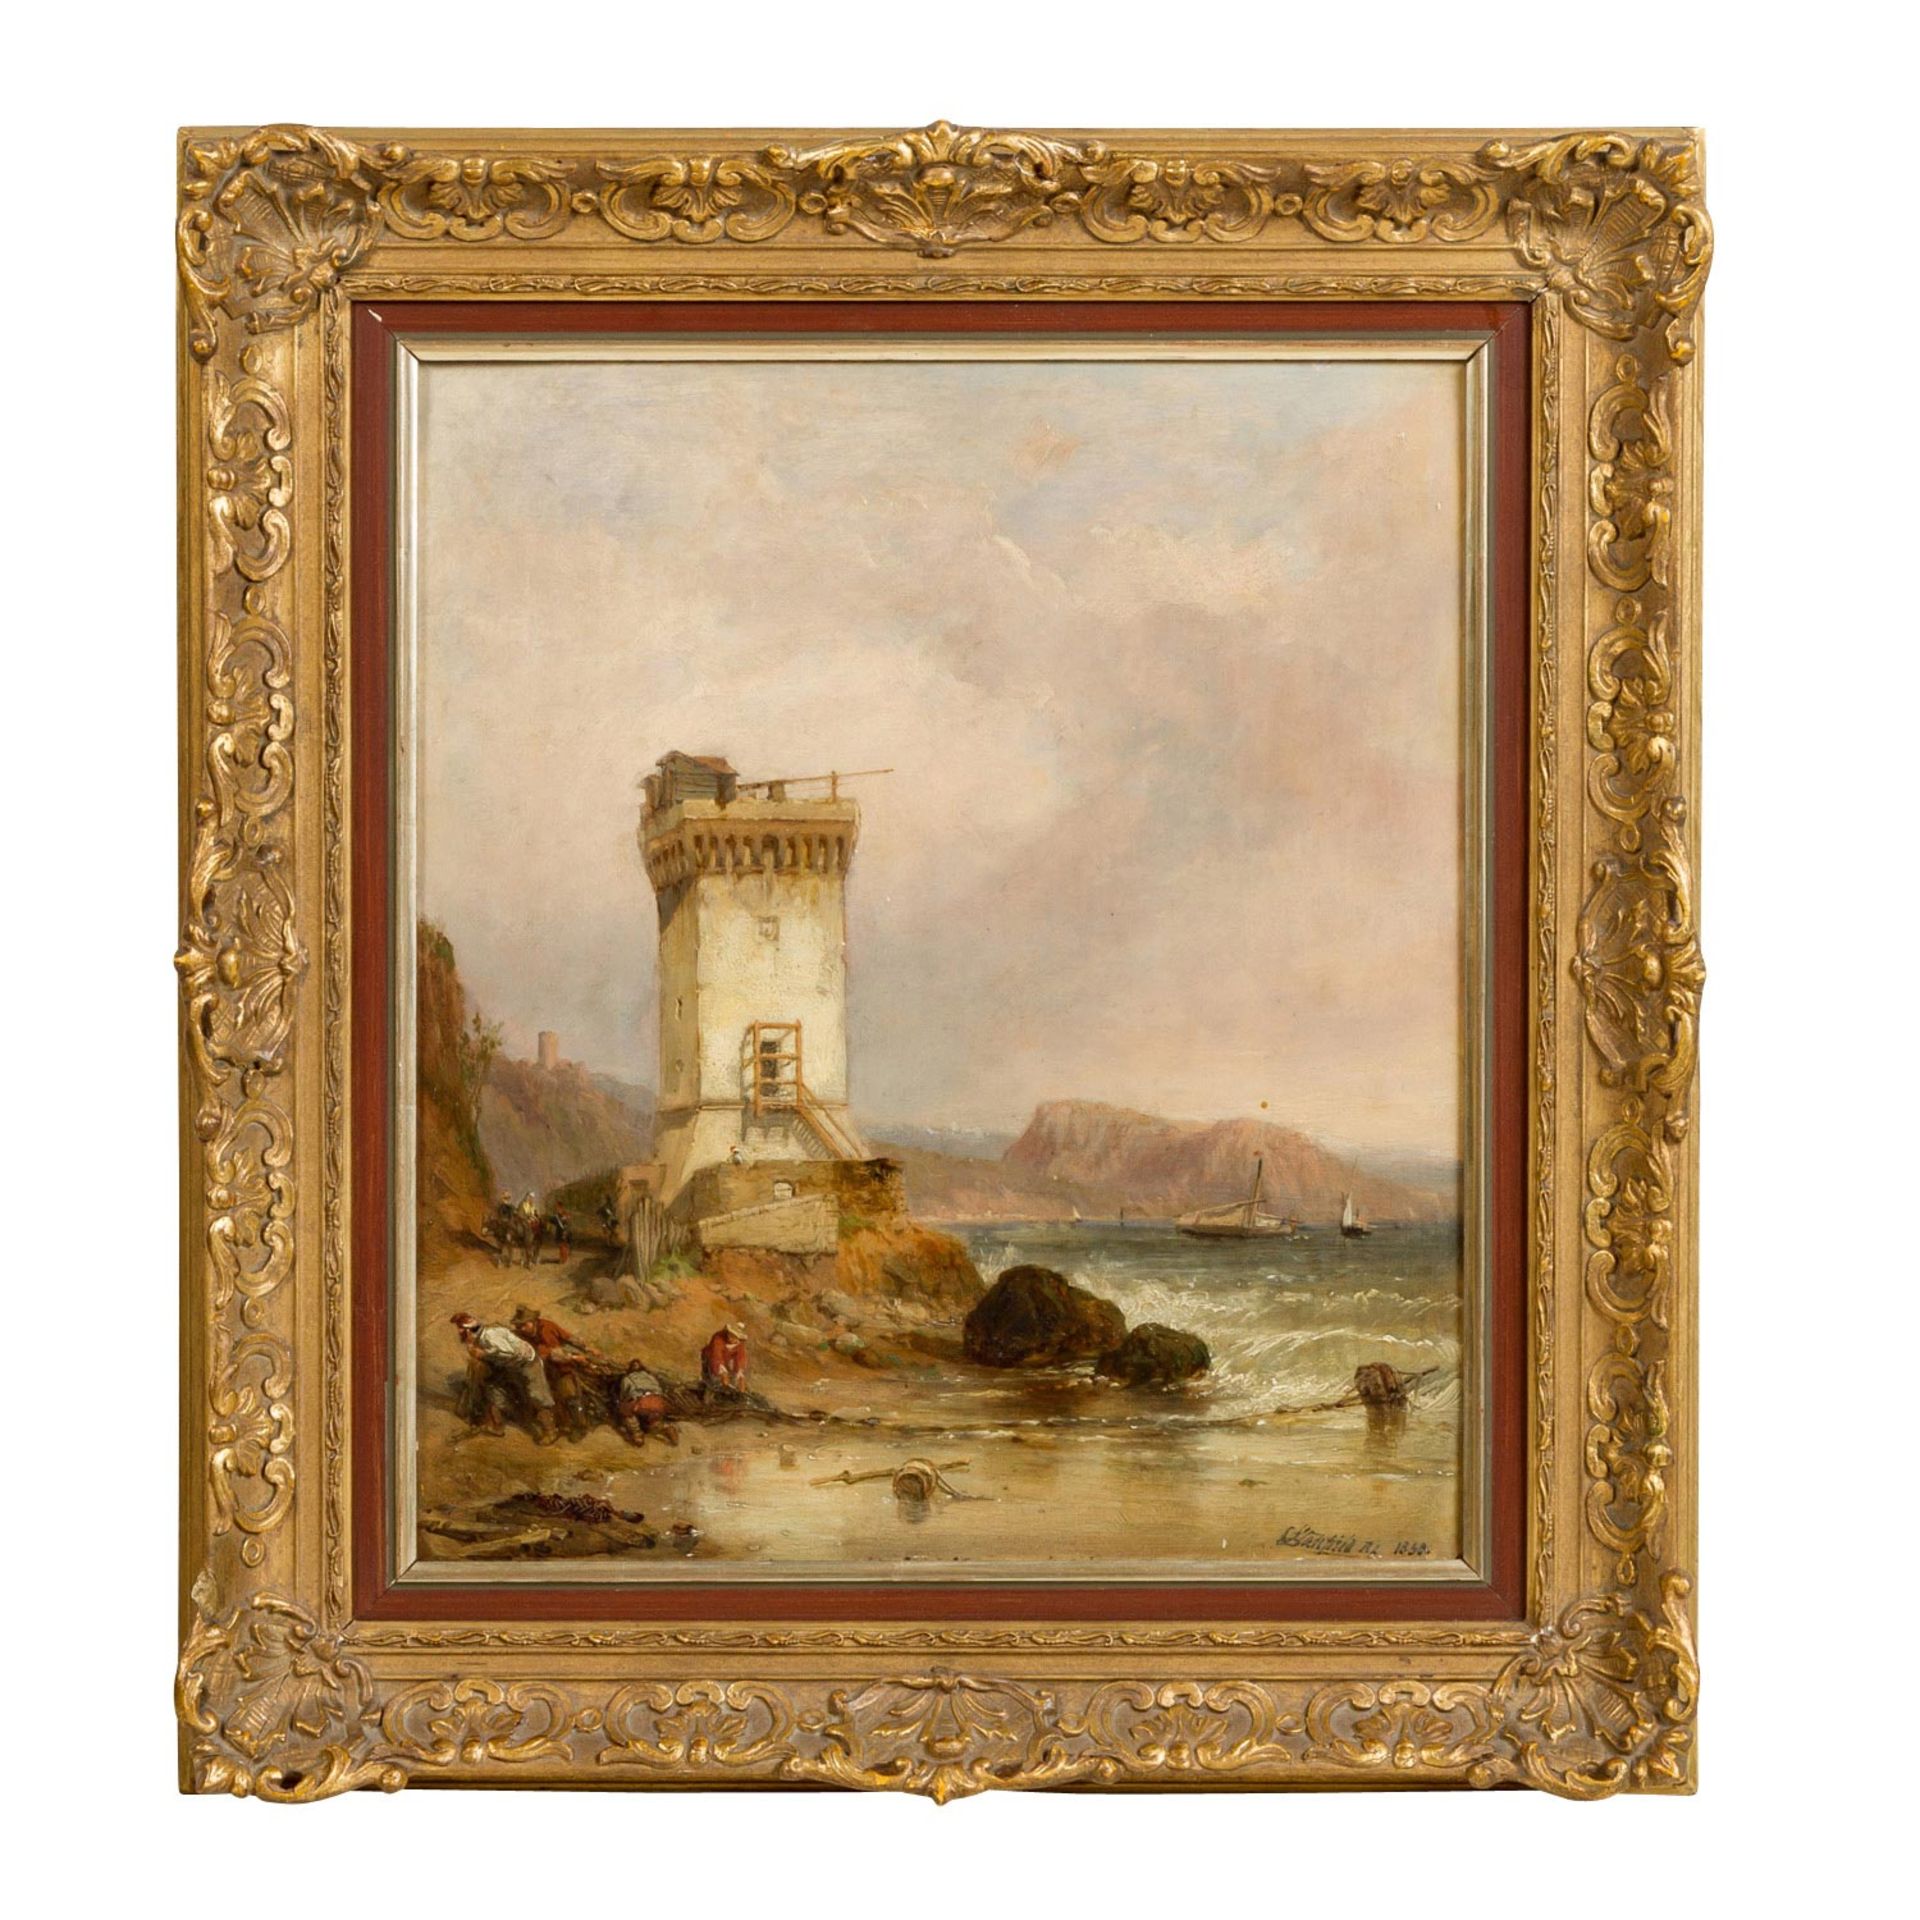 STANFIELD, WILLIAM CLARKSON (1793-1867), "Brittische Küste mit Ford und Wehrturm", im Vordergrund - Bild 2 aus 5